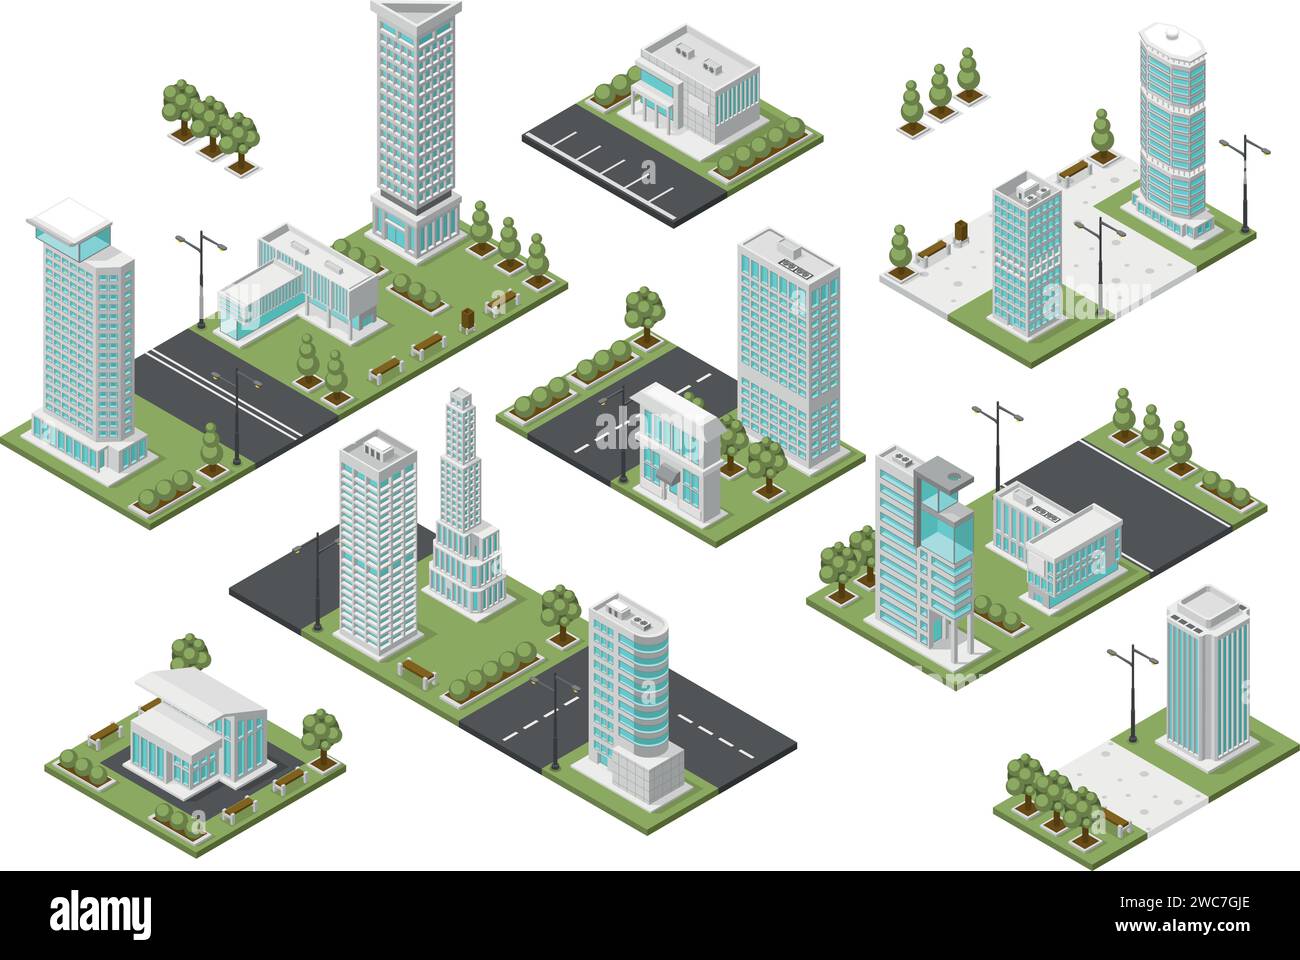 Isometrische Stadtmodule. Moderne Vororte, städtischer Bauplan. Verschiedene Viertel mit Parks und öffentlichen Zonen, Architekturprojekte makellose Vektoren Stock Vektor